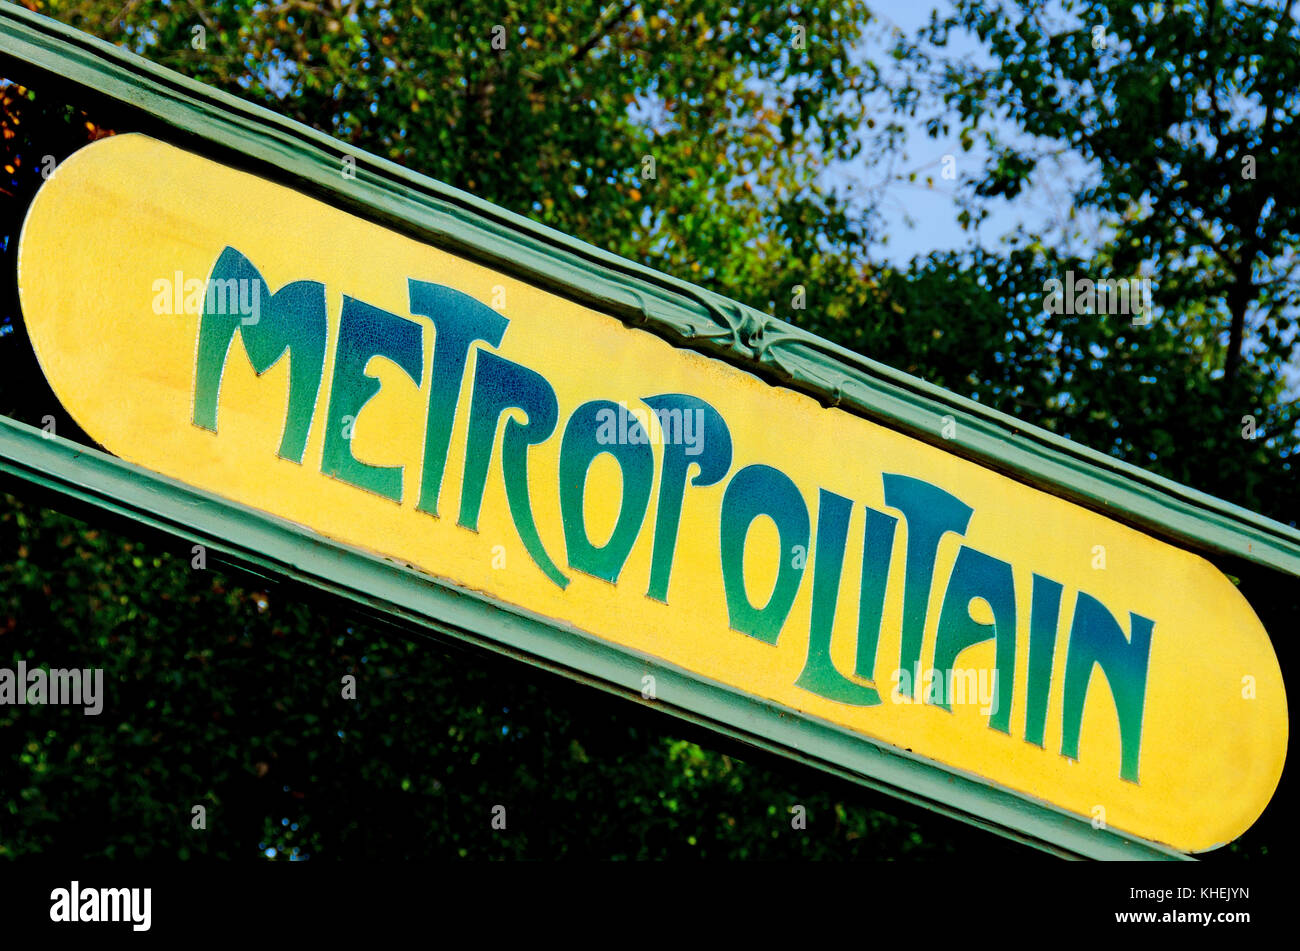 Paris, France. La station de métro de Paris (CITE), signe traditionnel d'Hector Guimard dans le style Art Nouveau Banque D'Images